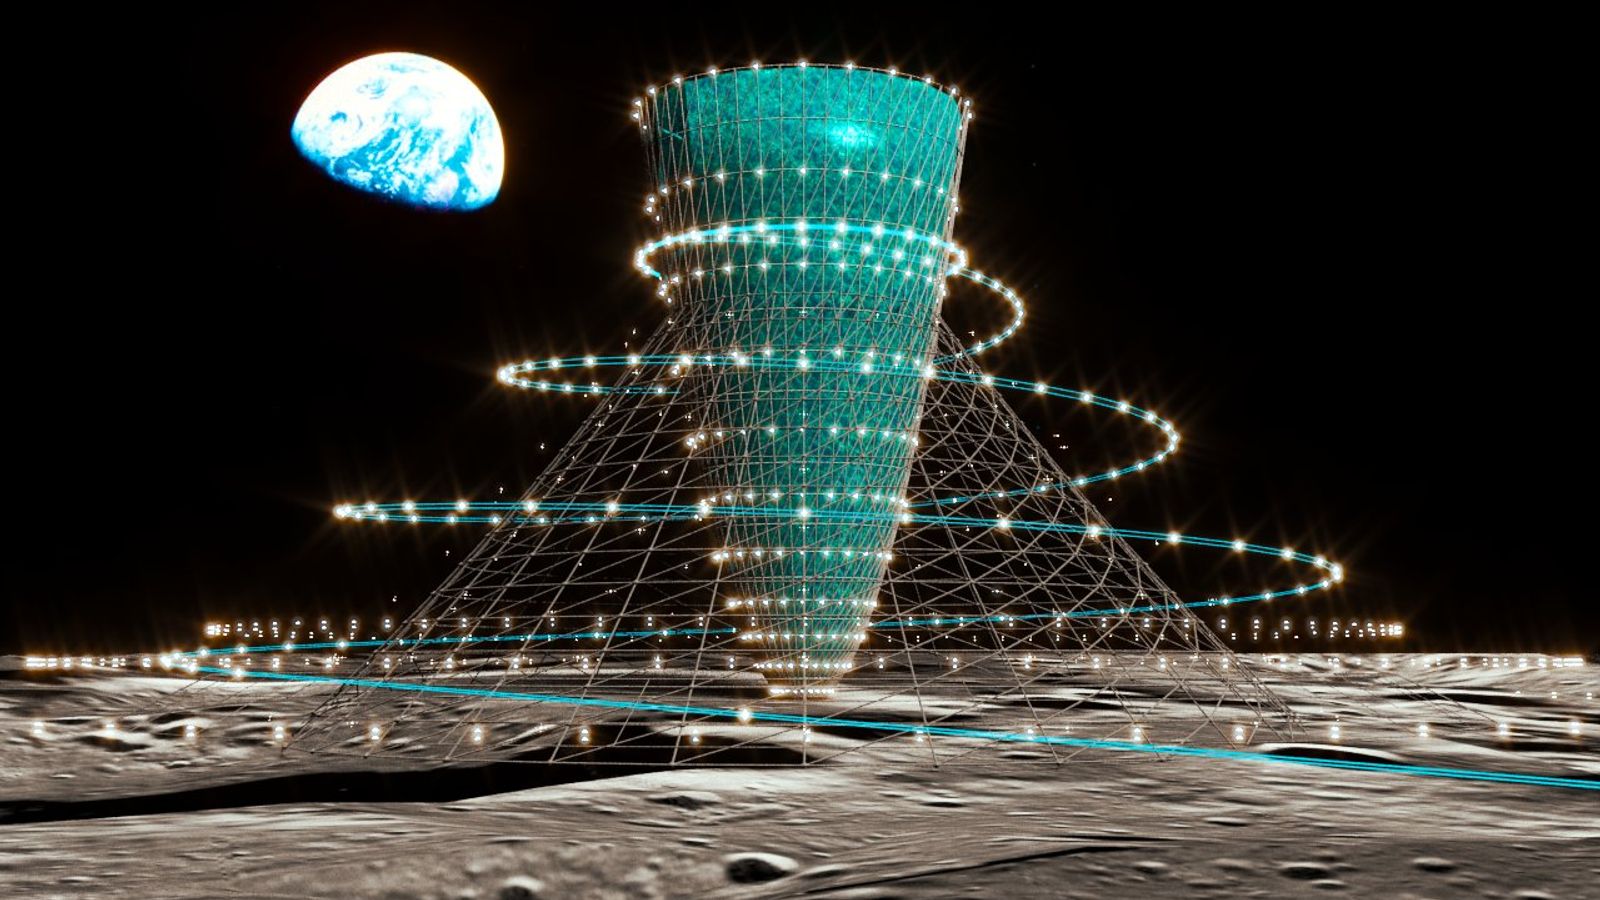 日本の研究者が月と火星に提案された人工重力施設を明らかにする| 科学技術ニュース